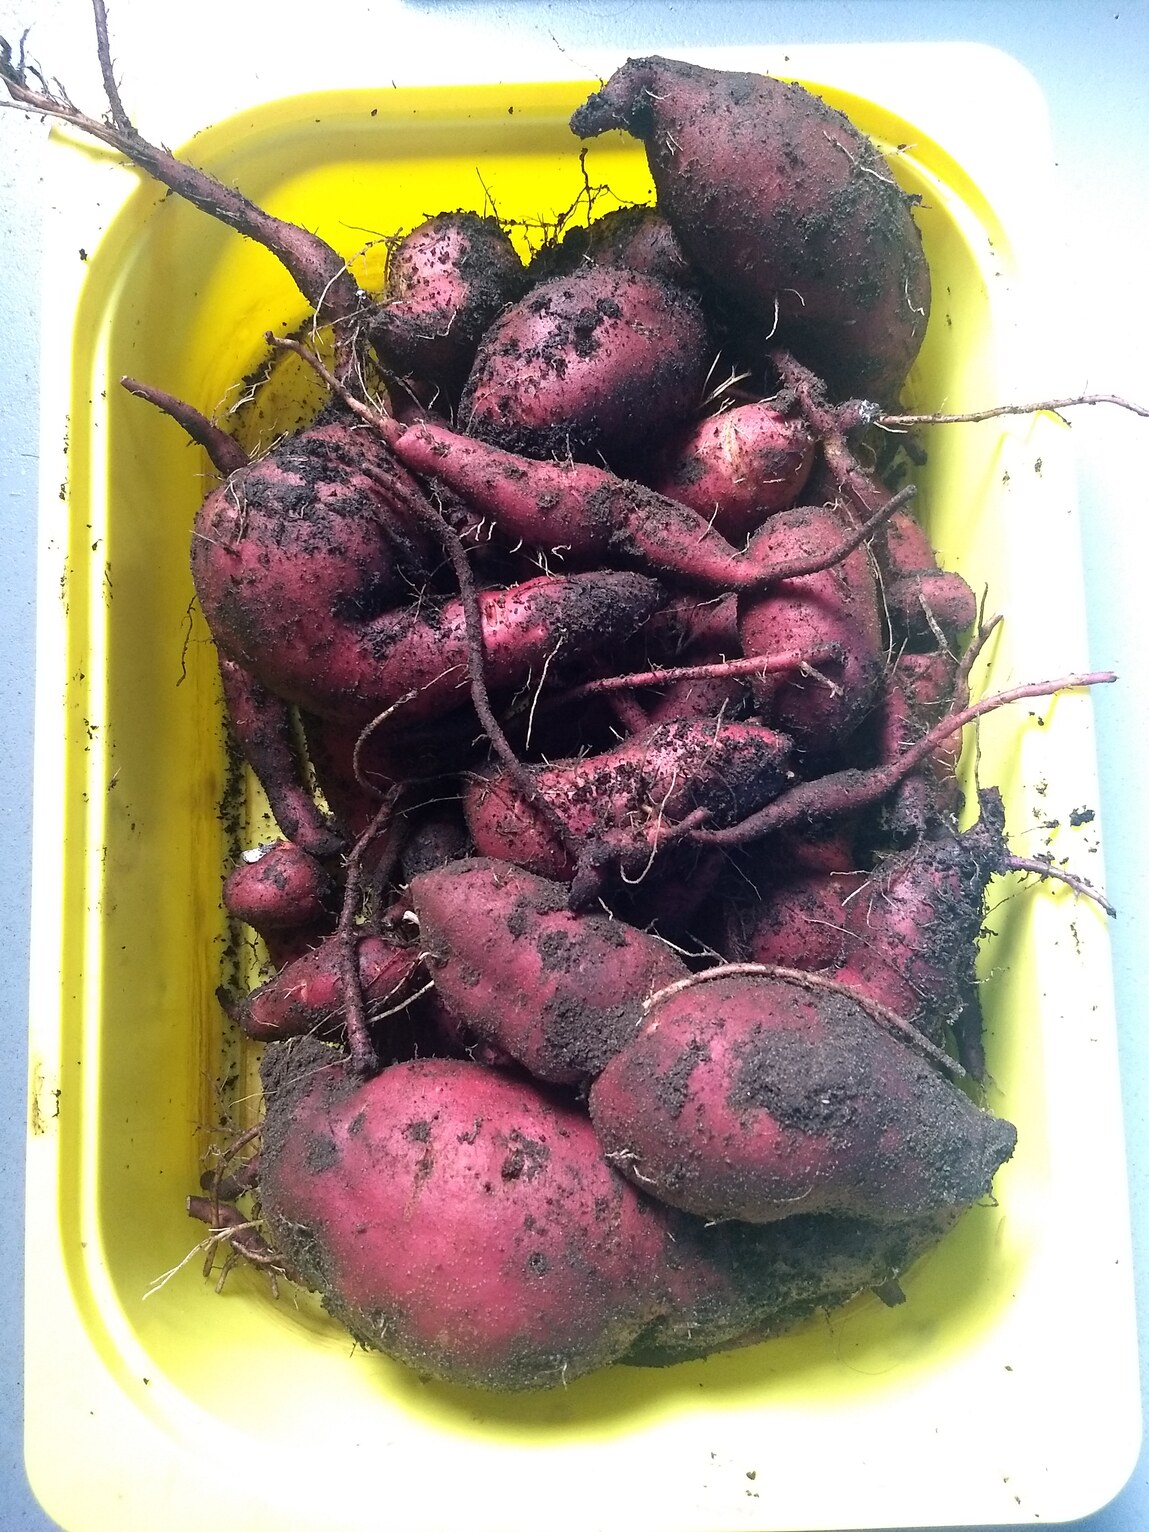 zoete aardappels uit de volle grond